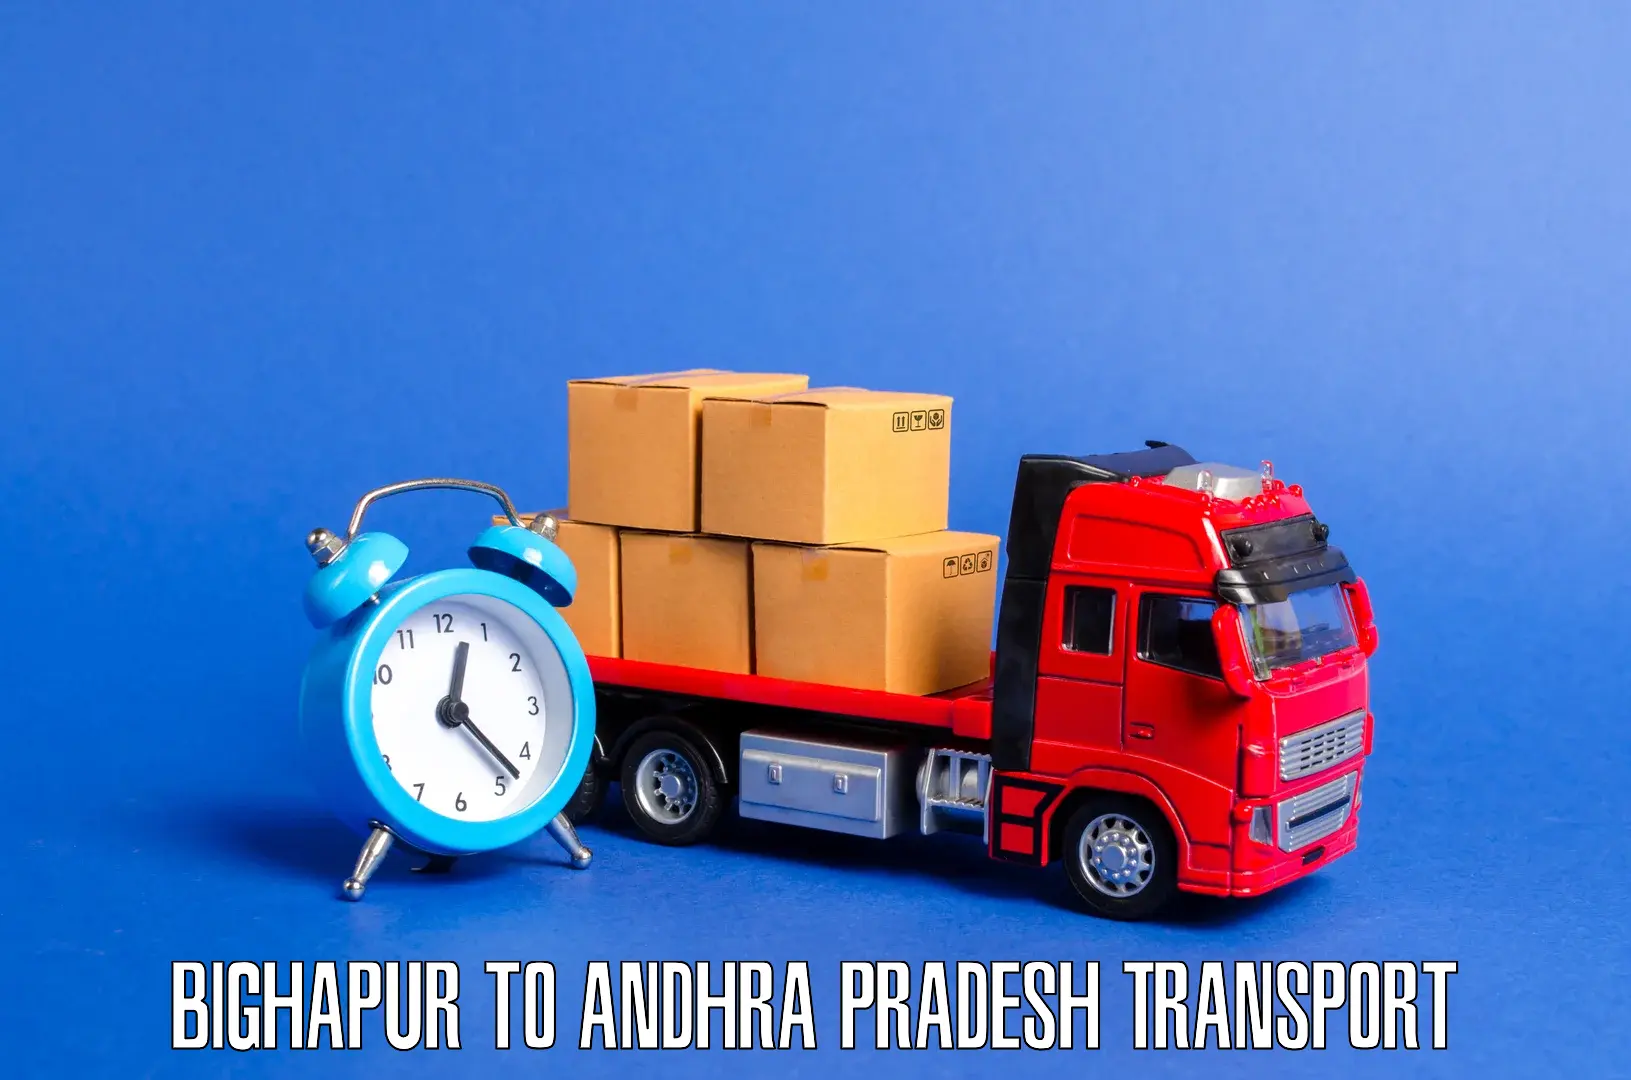 Interstate transport services Bighapur to West Godavari